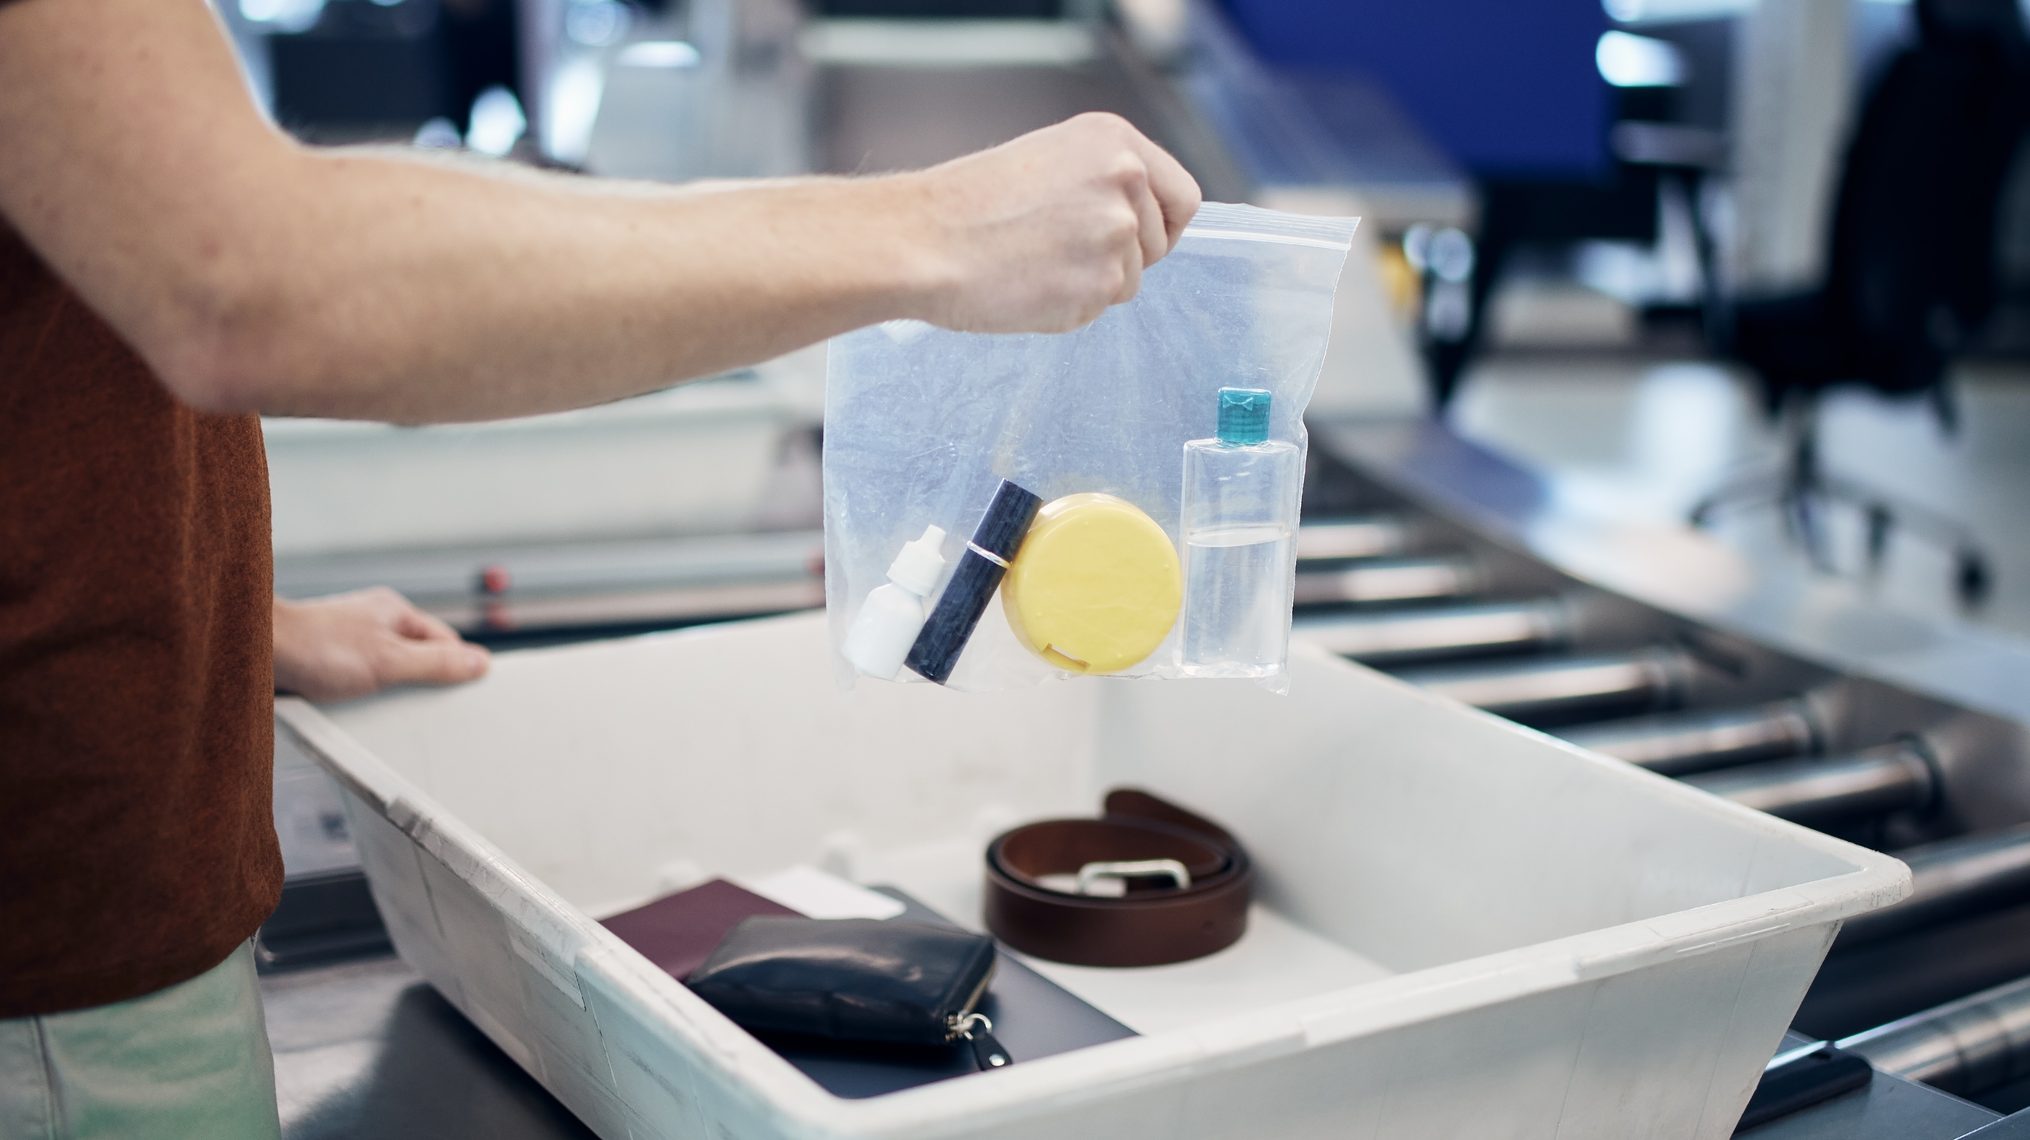 Fin la normativa de los líquidos en el equipaje de mano gracias a los nuevos escáneres - Cadena Dial